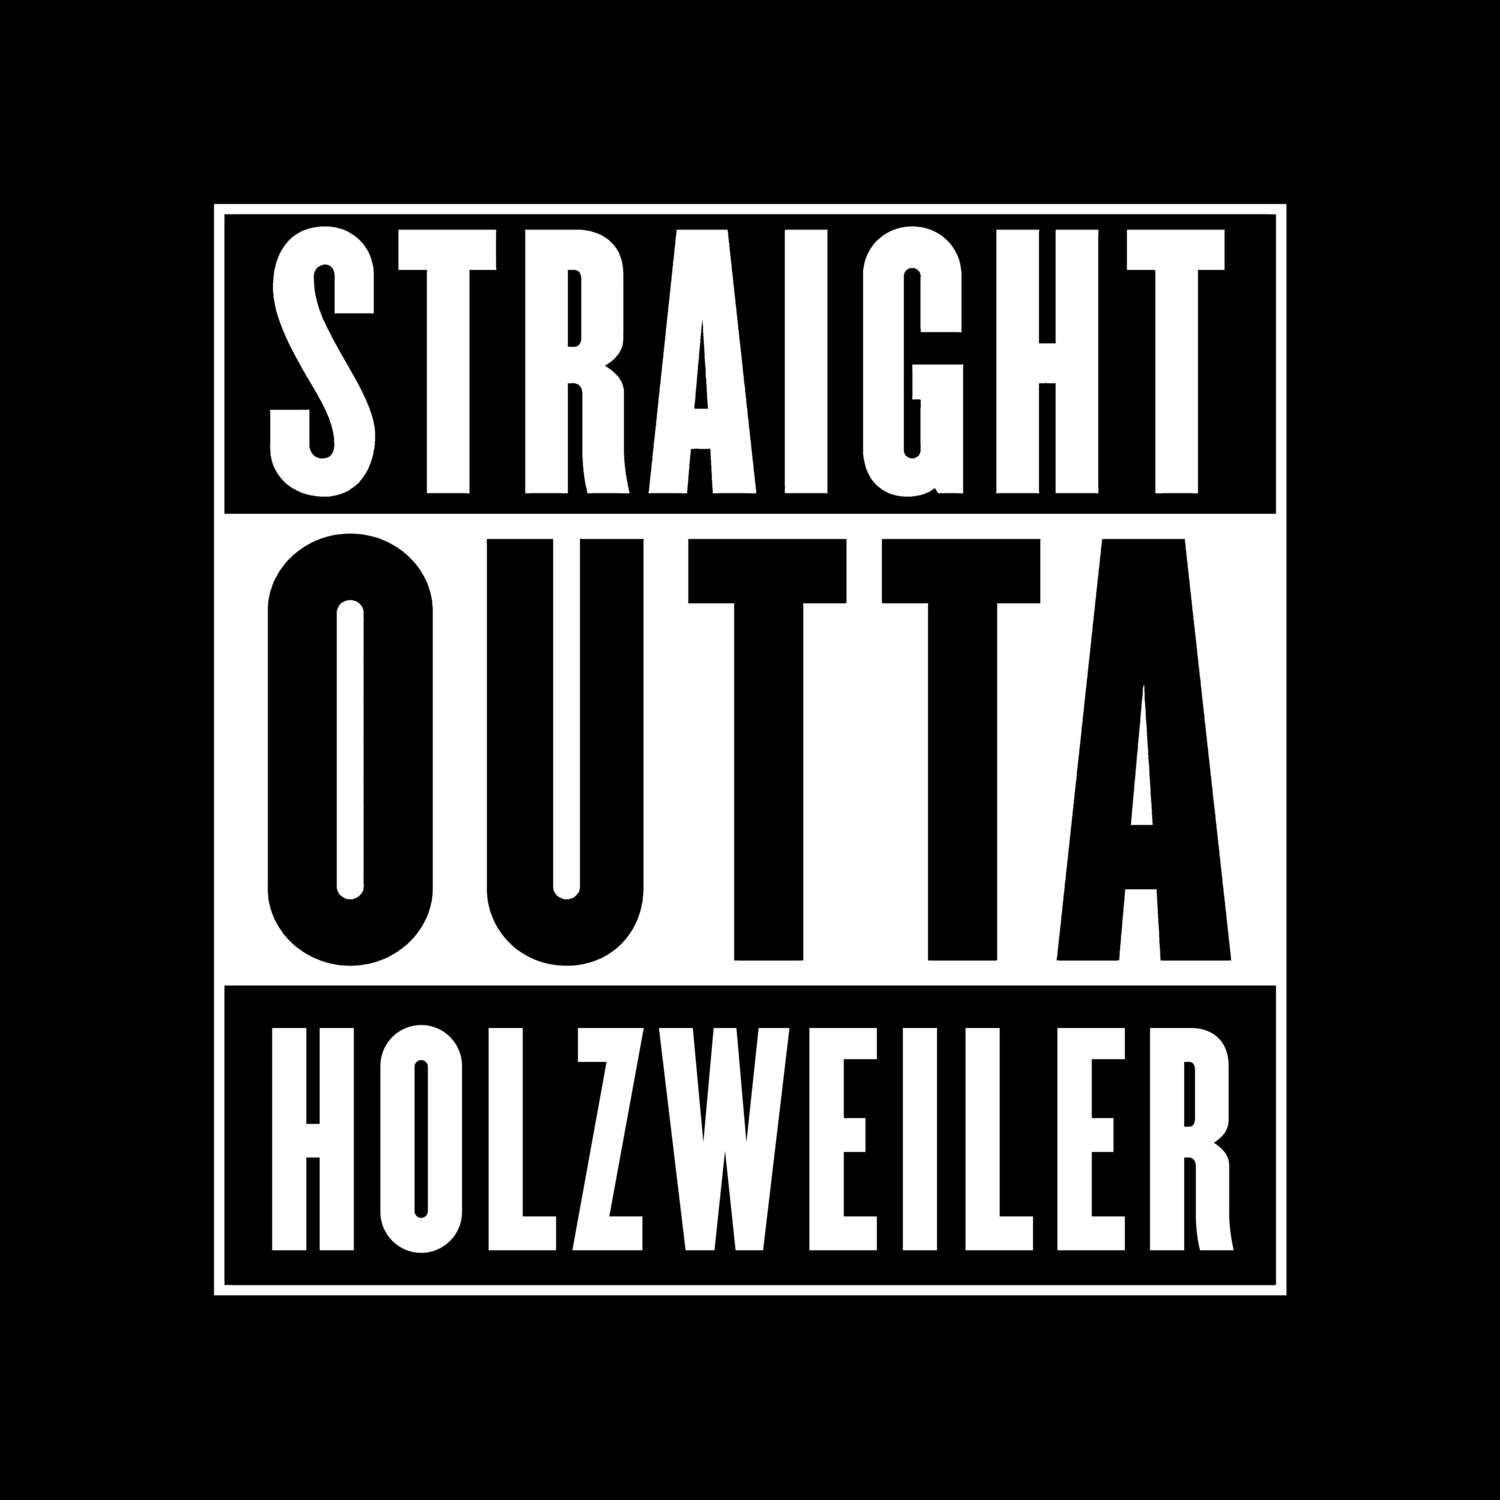 Holzweiler T-Shirt »Straight Outta«